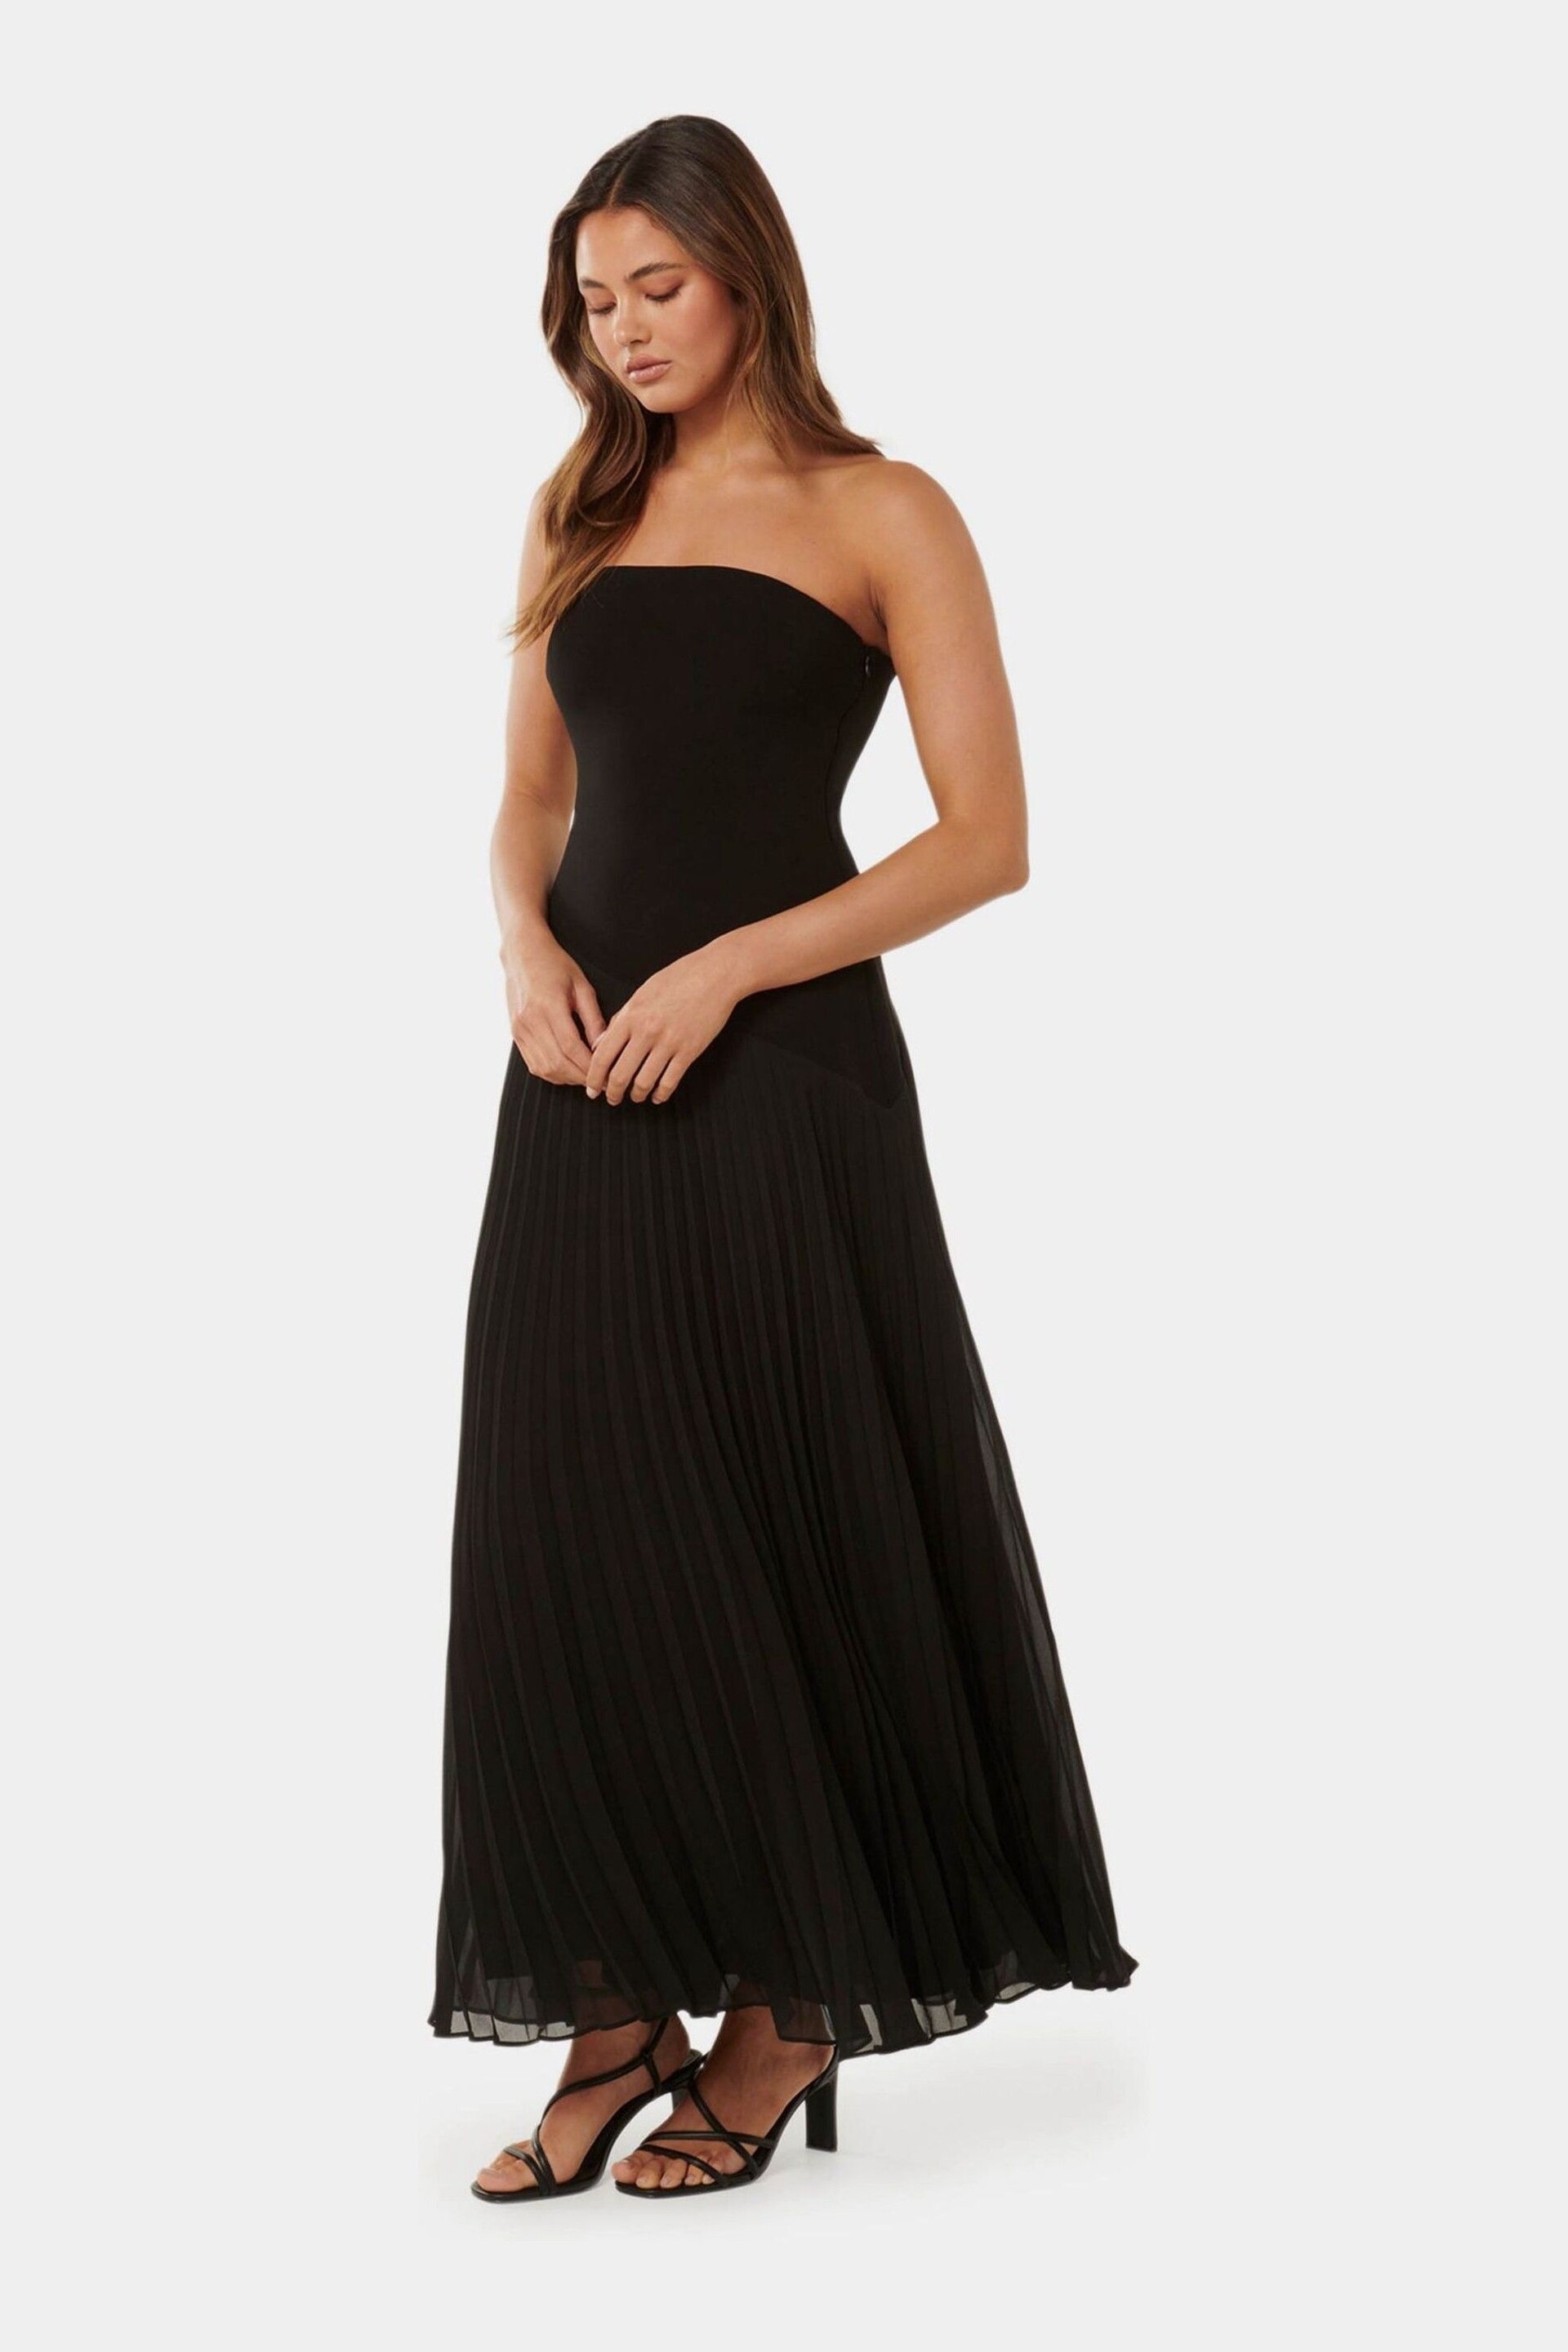 Forever New Black Capri Strapless Pleated Midi Dress - Image 3 of 4